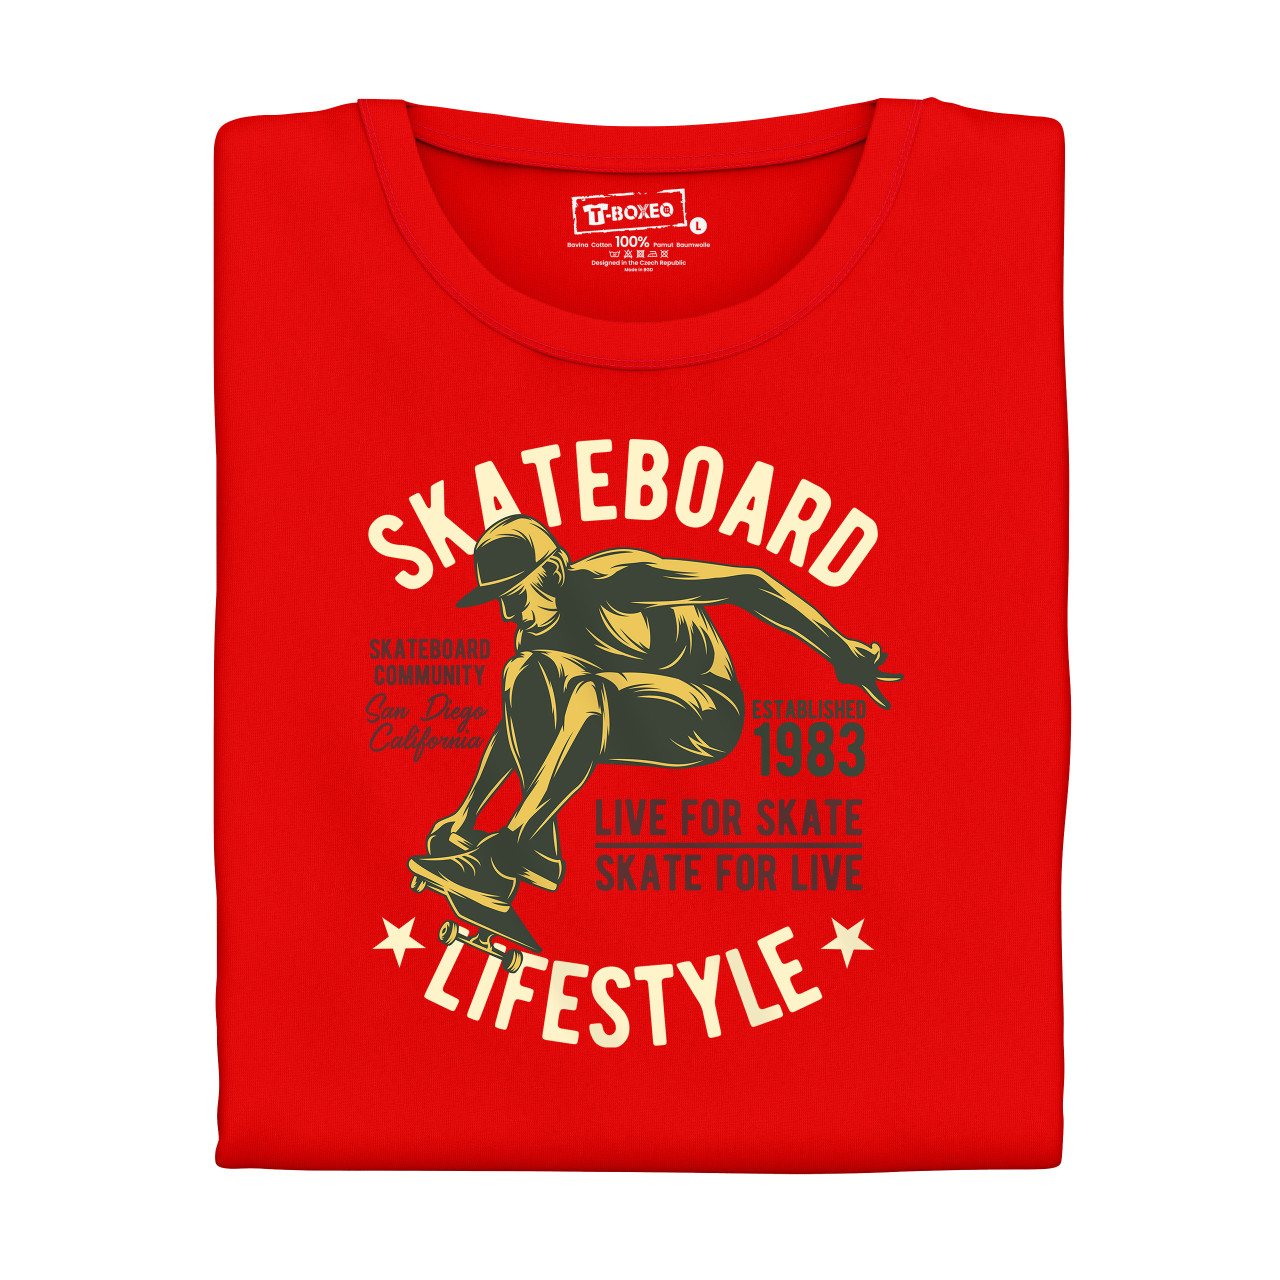 Pánské tričko s potiskem “Skateboard lifestyle"